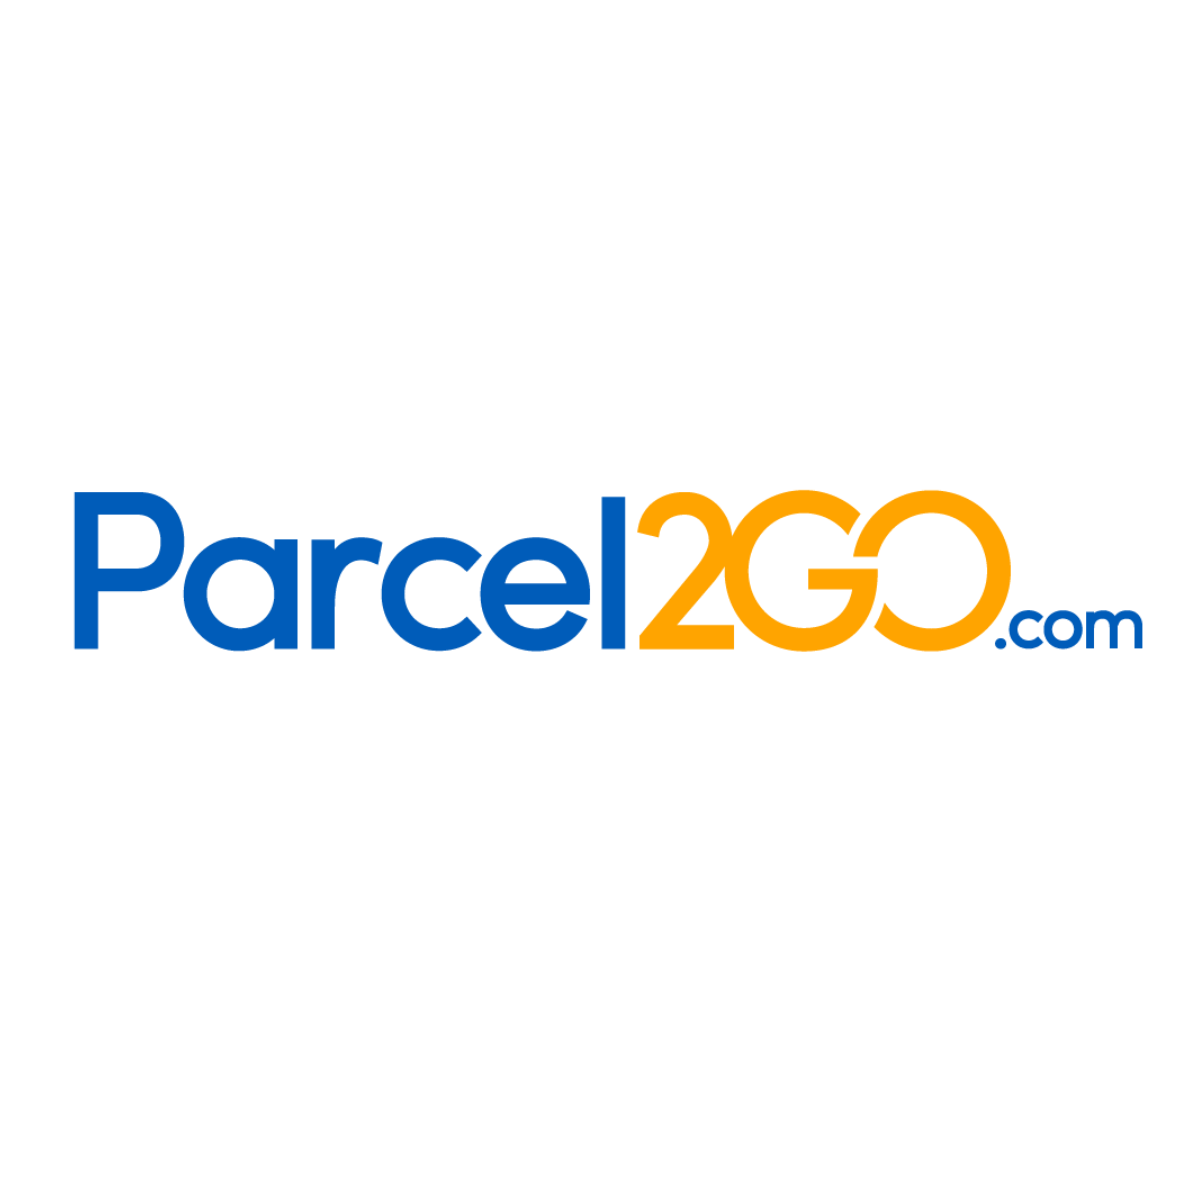 p2g-logo-1200x1200.png